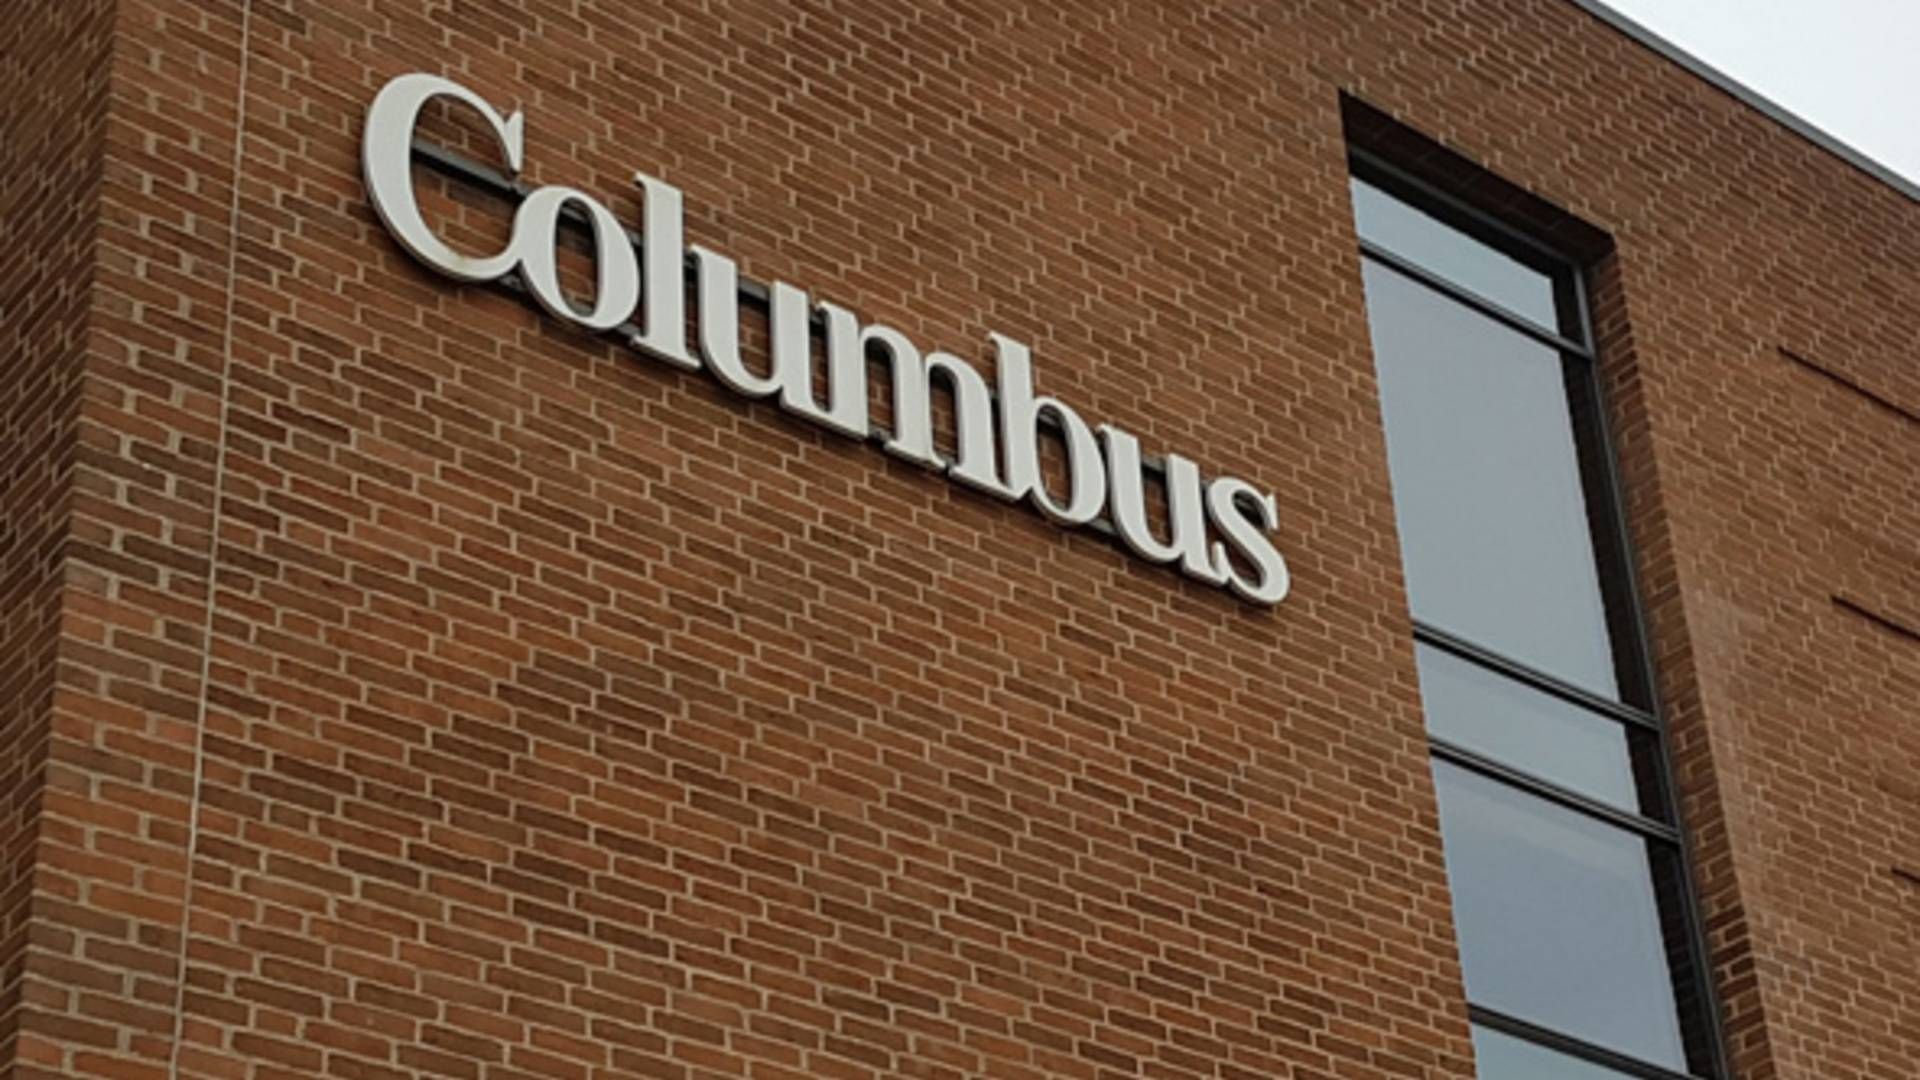 Columbus har solgt sin russiske forretning. | Foto: Jakob Skouboe